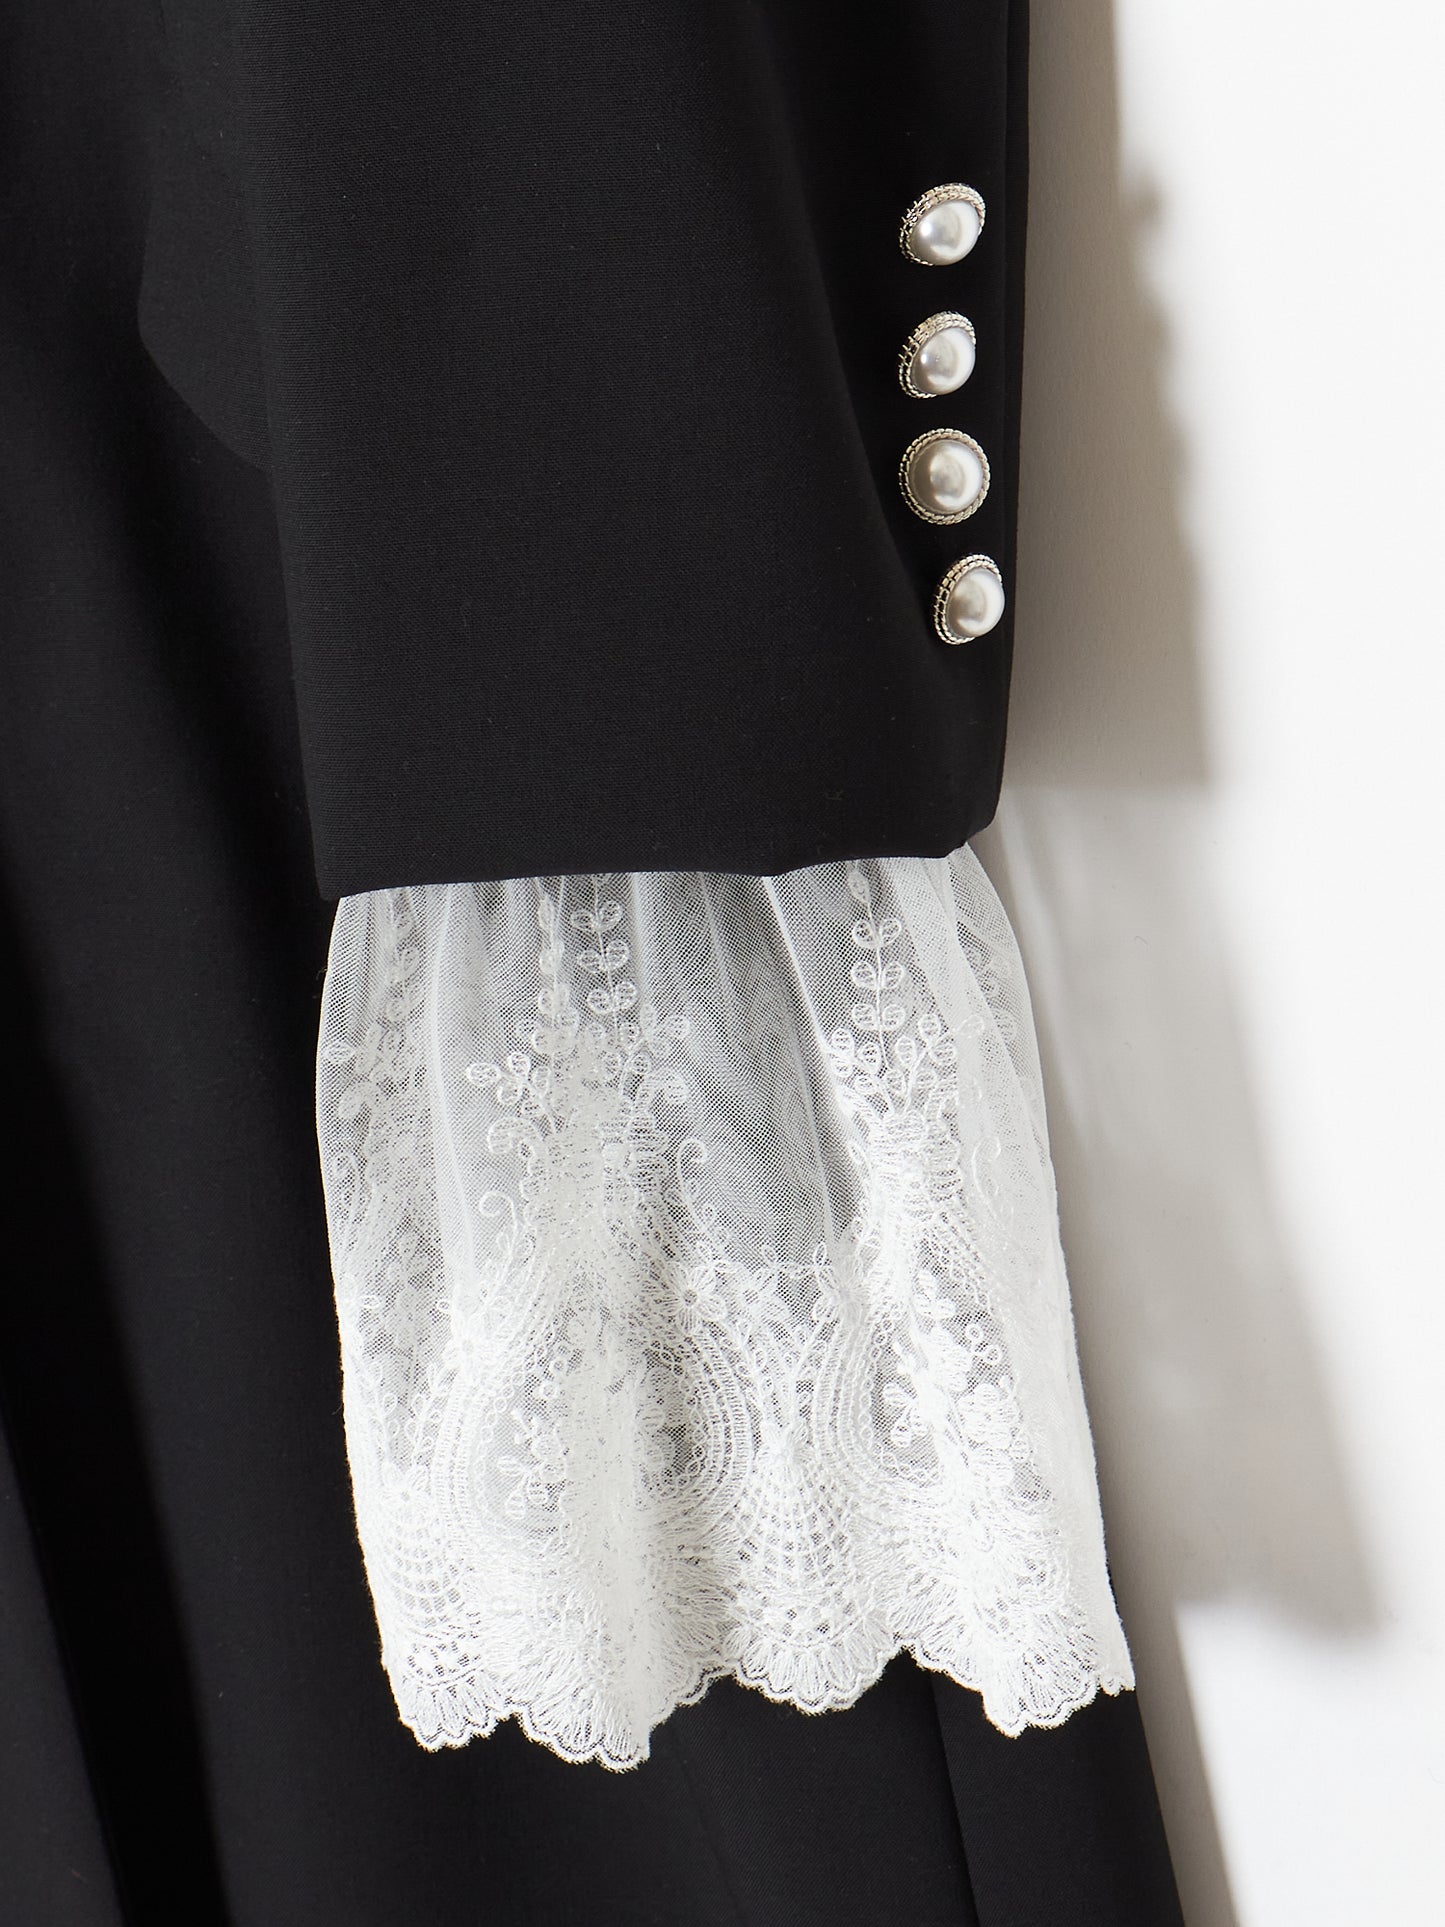 sailor lace suit dress【Stock】